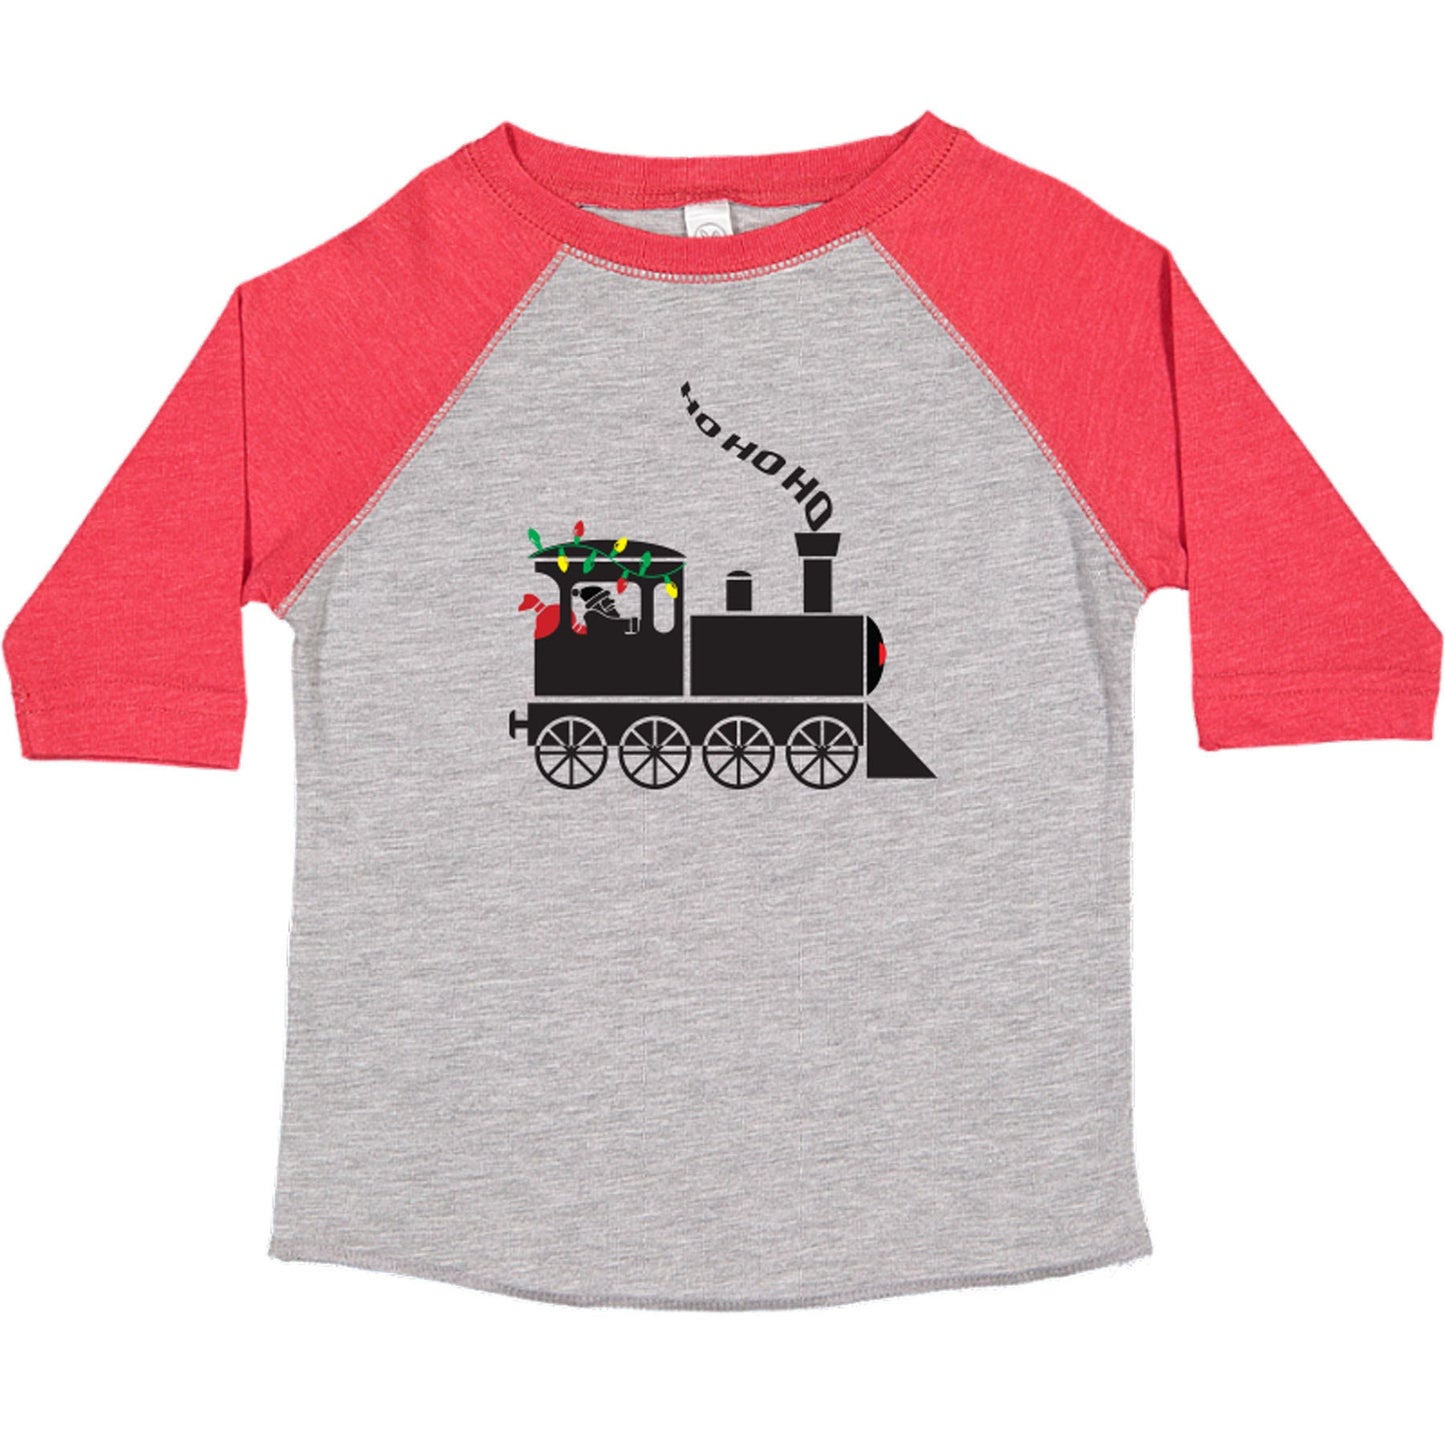 Christmas Train boys Christmas shirt